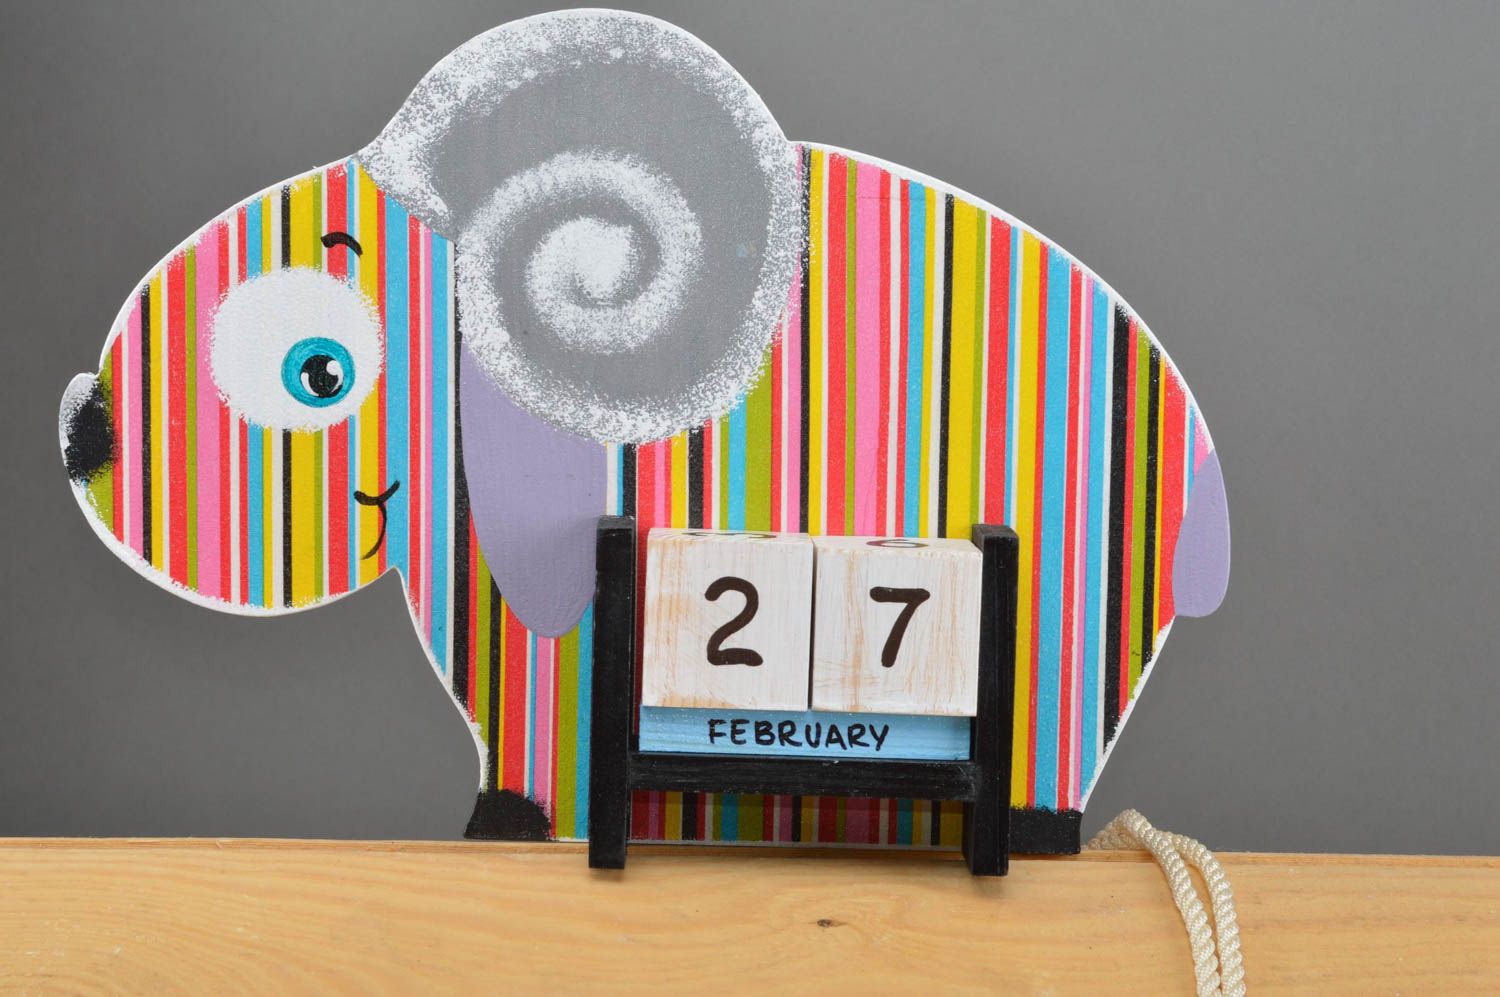 Детский календарь в виде барашка из фанеры декупаж в яркую полоску ручной работы фото 2